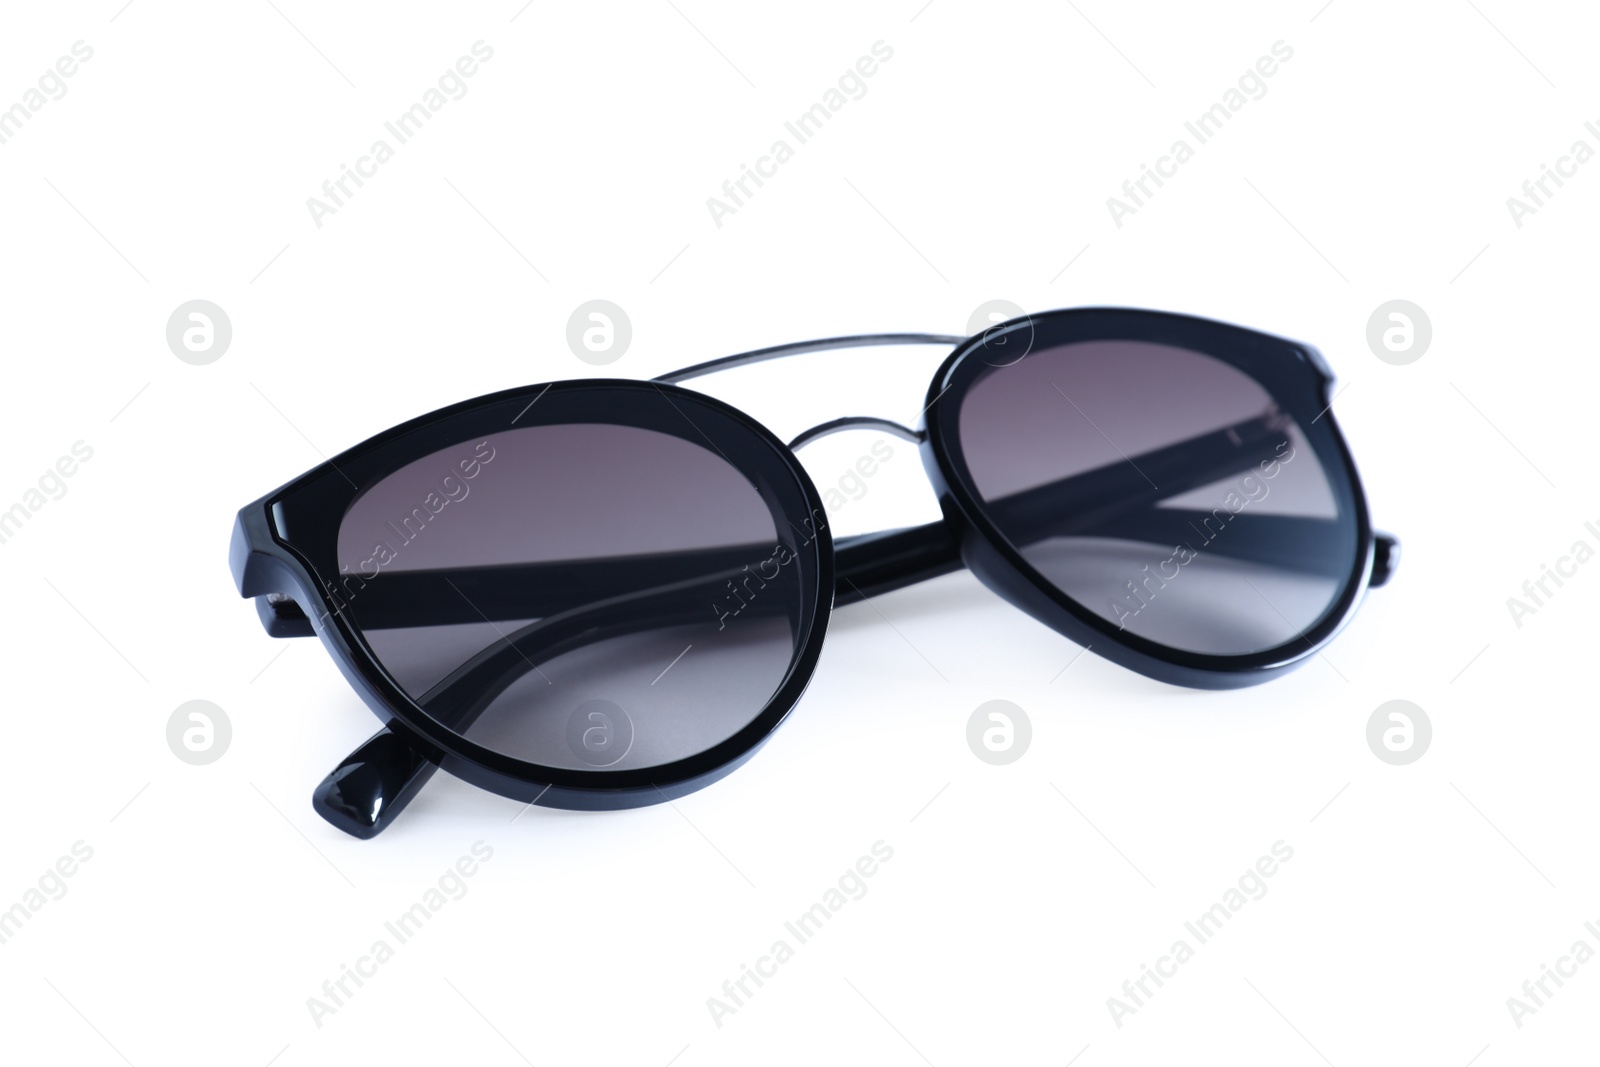 Photo of Stylish sunglasses on white background. Summer accessory